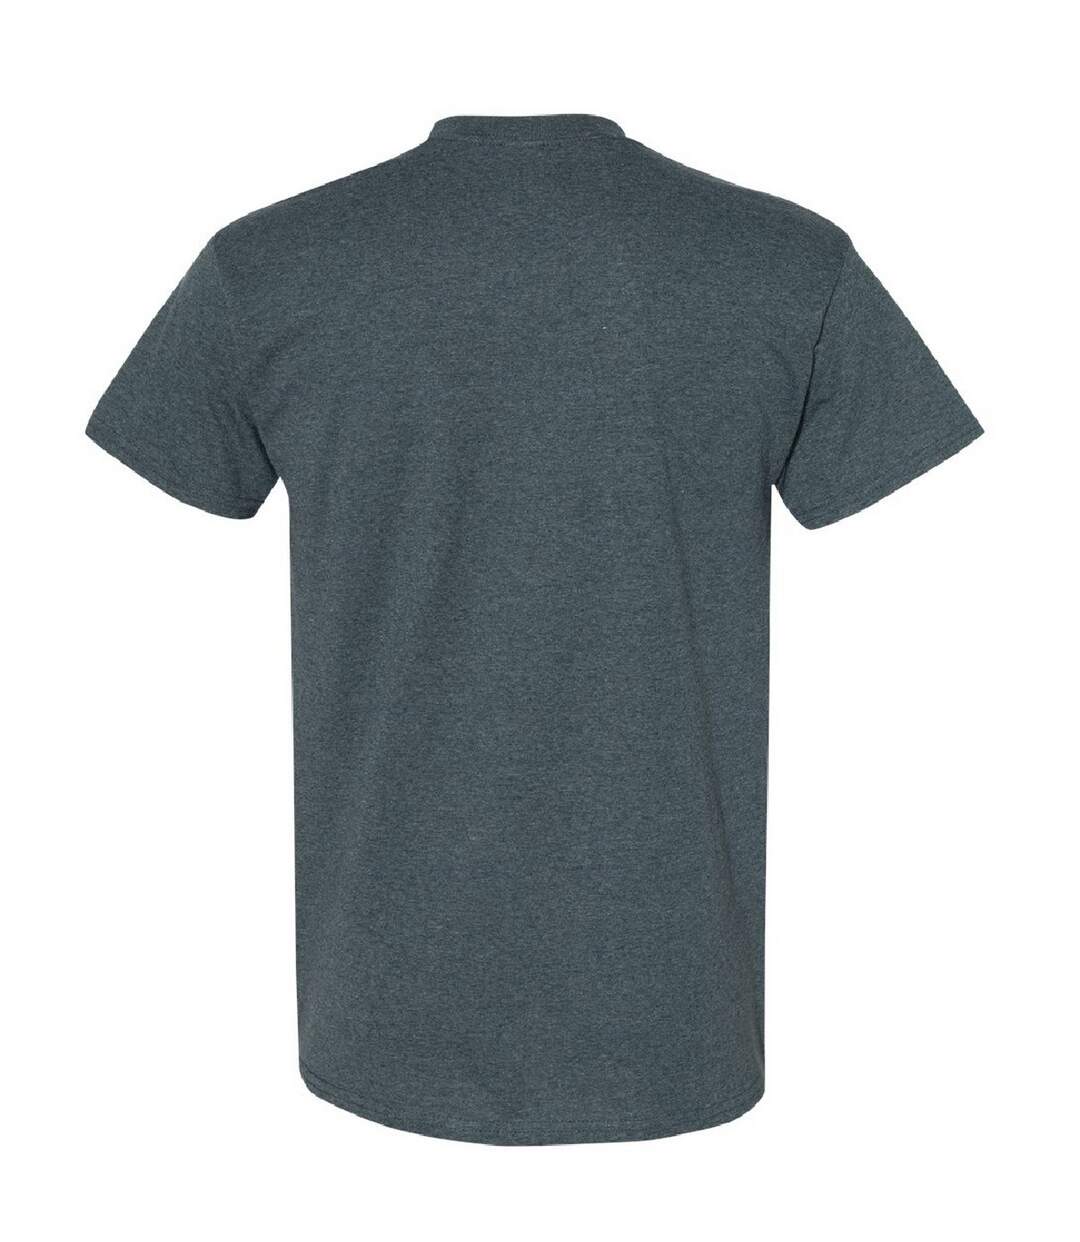 Gildan - T-shirt à manches courtes - Homme (Gris sombre) - UTBC481